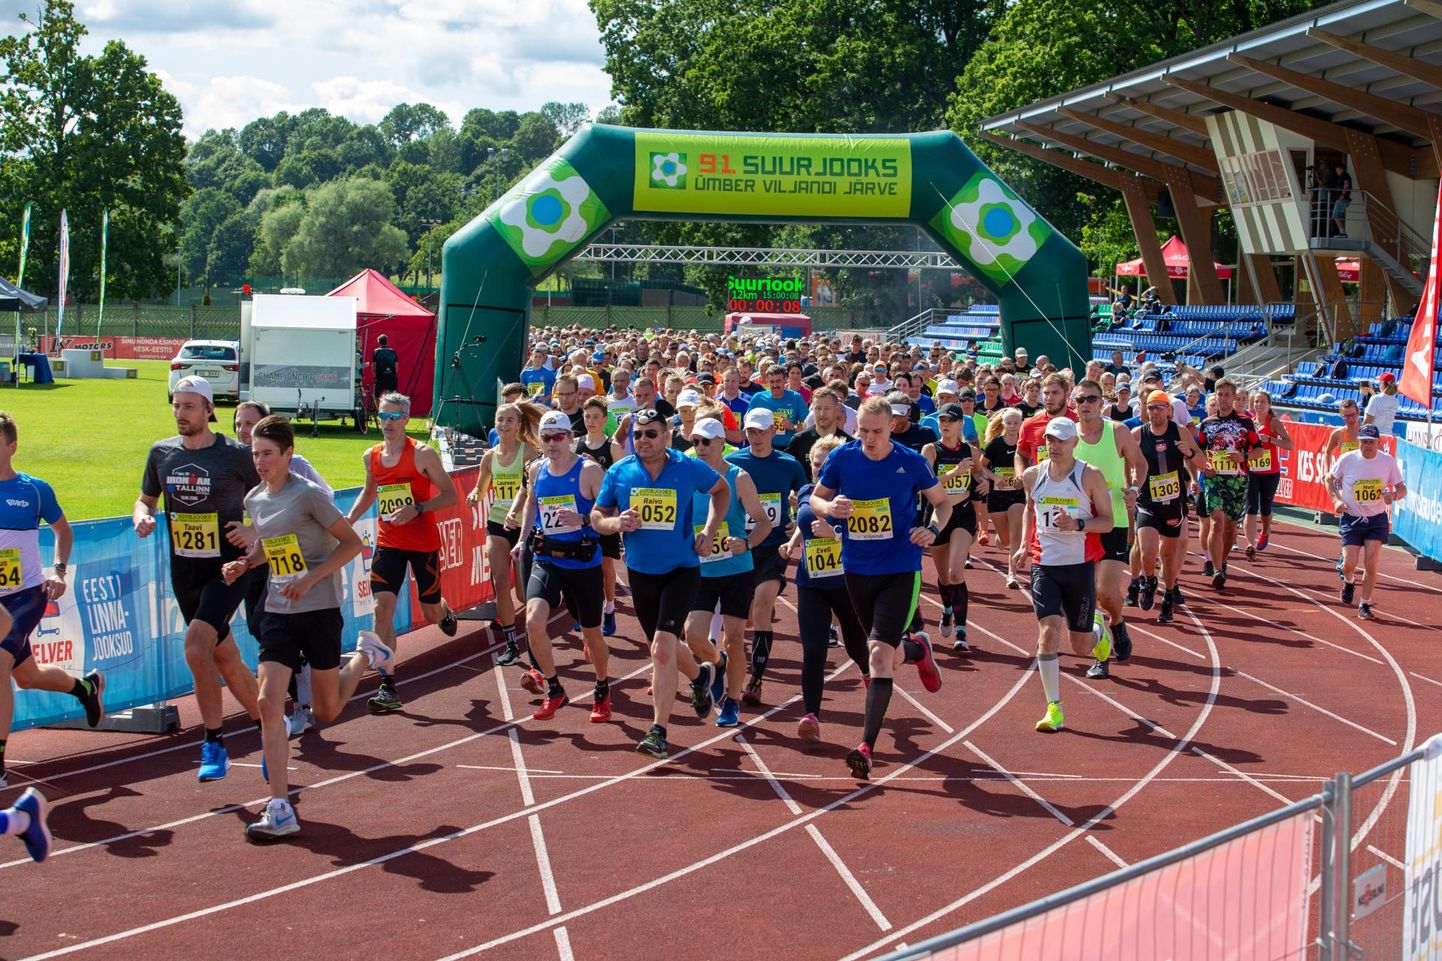 Möödunud aasta augustis toimus ümber Viljandi järve jooks 91. korda. 2000 osalejat jagati ära kahe stardi vahel.